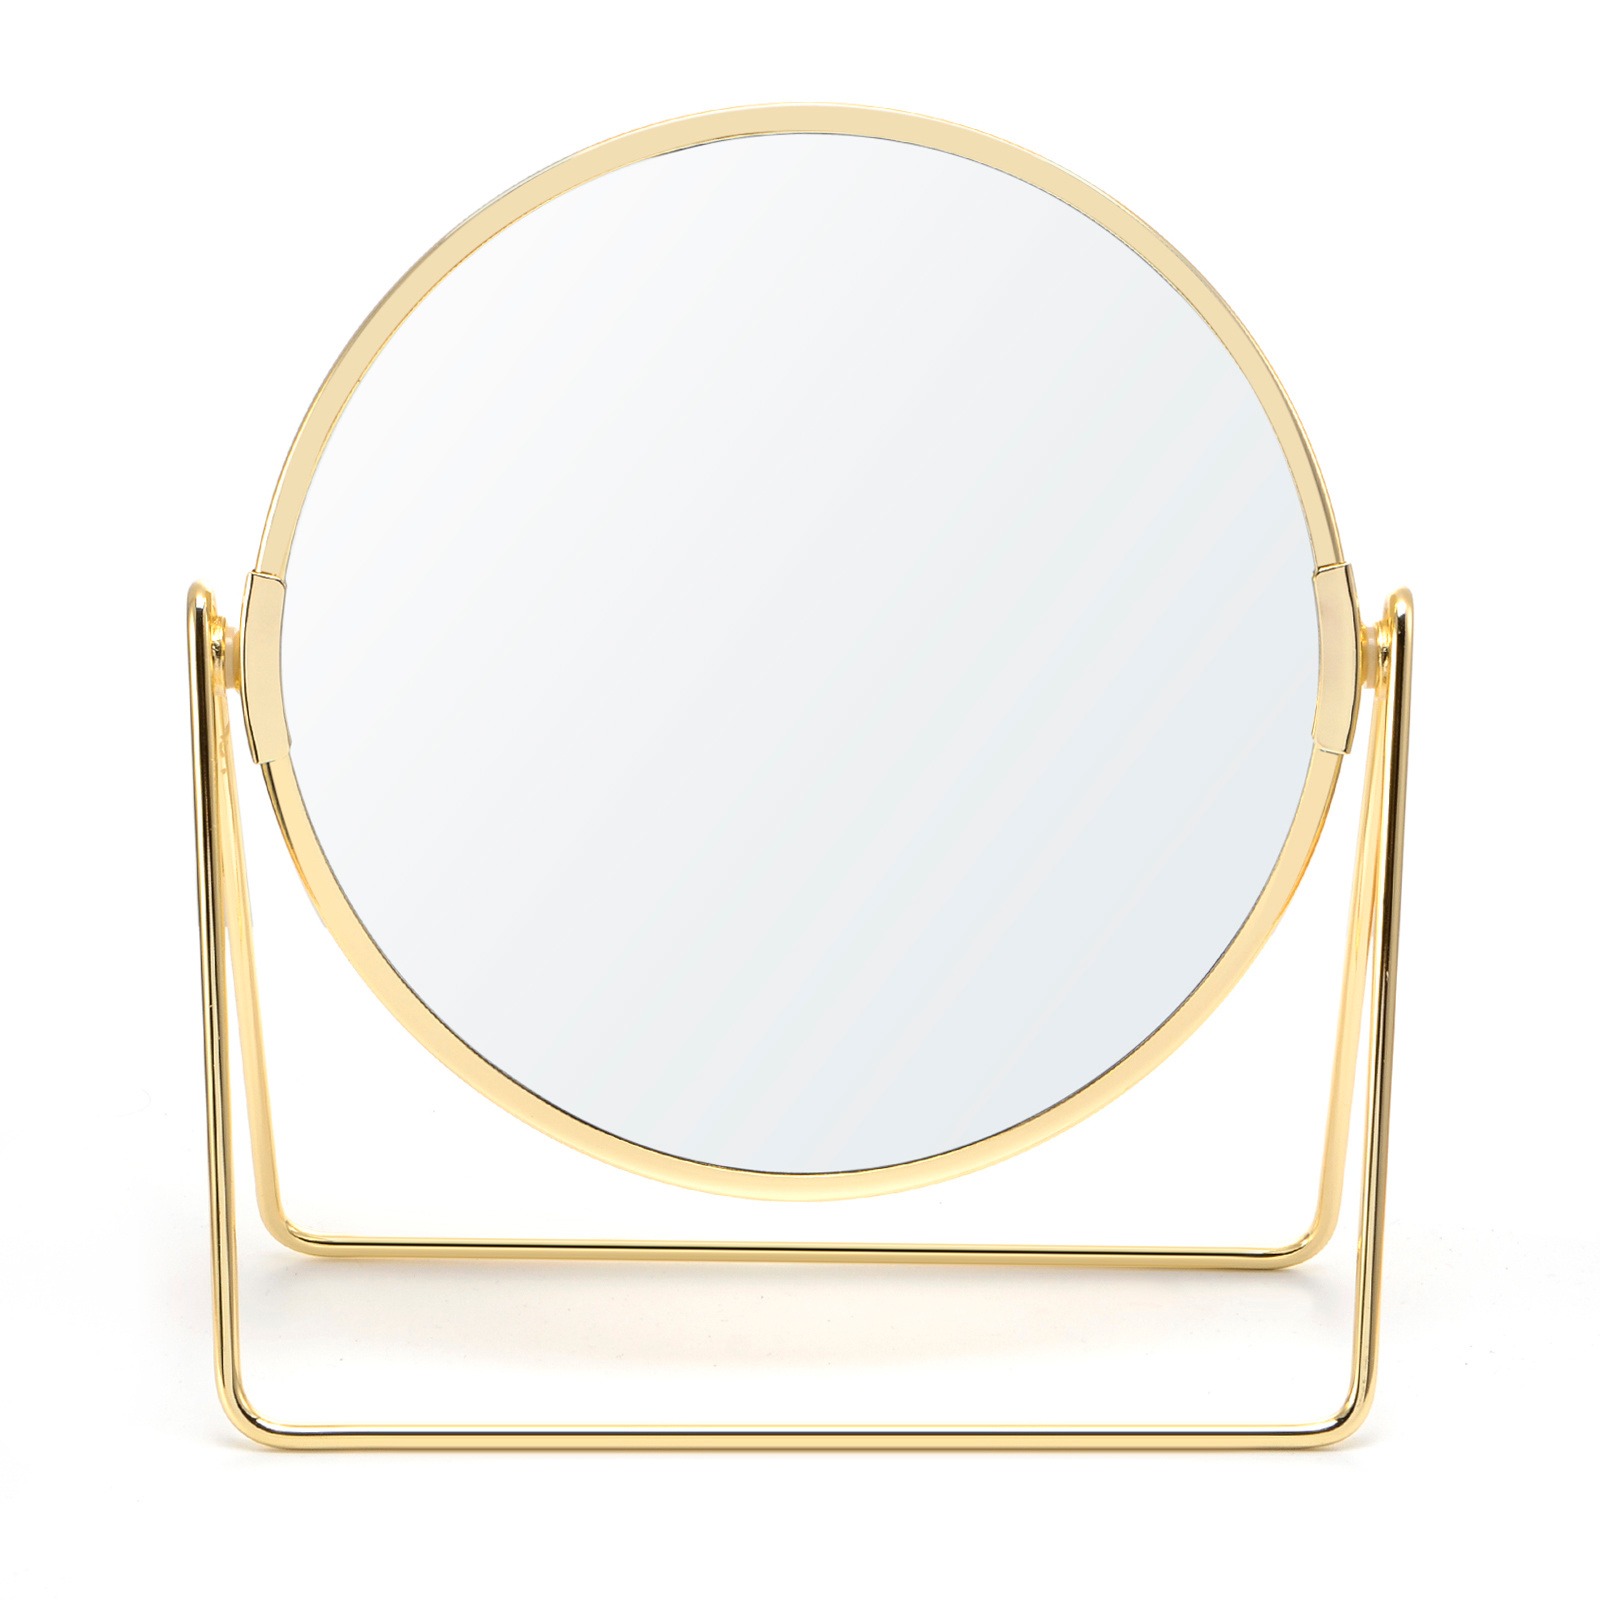 支架台镜梳妆镜公主镜子桌面圆形化妆镜子工厂定做简约时尚旋转台式双面化妆镜